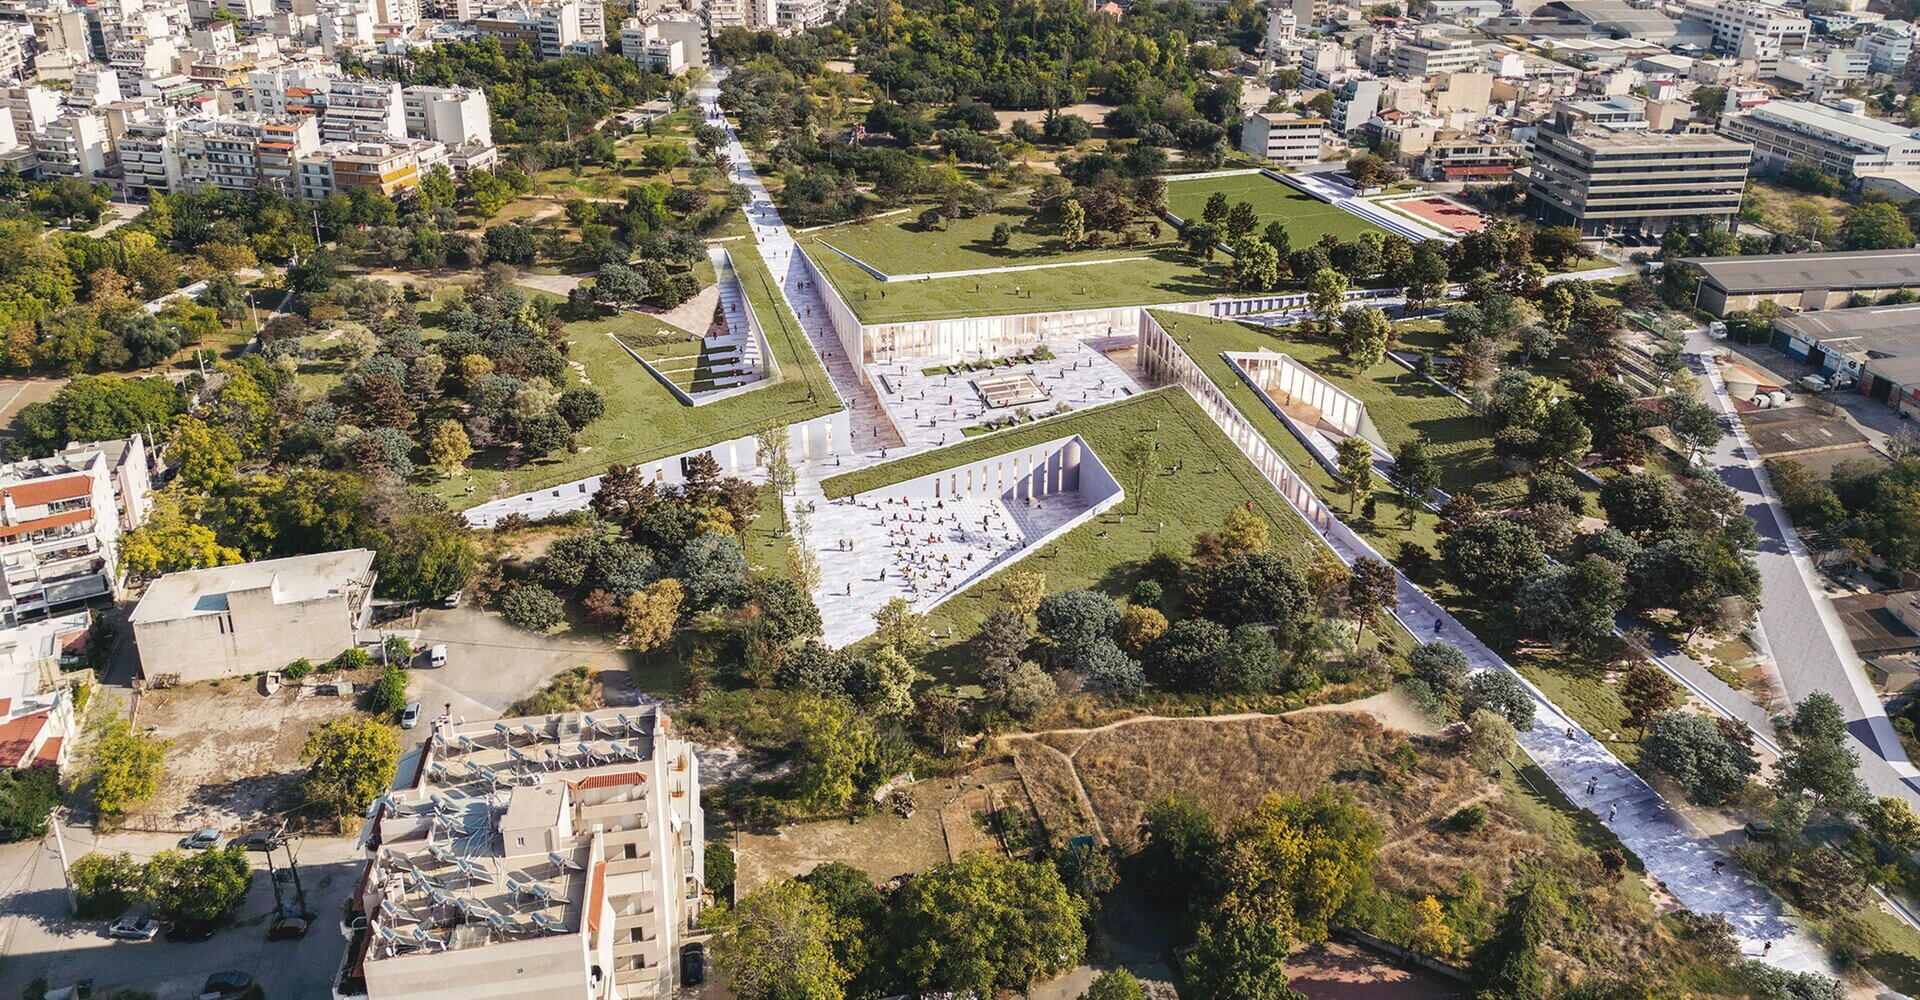 More information about "Το πρώτο πράσινο αρχαιολογικό μουσείο της Ελλάδας"